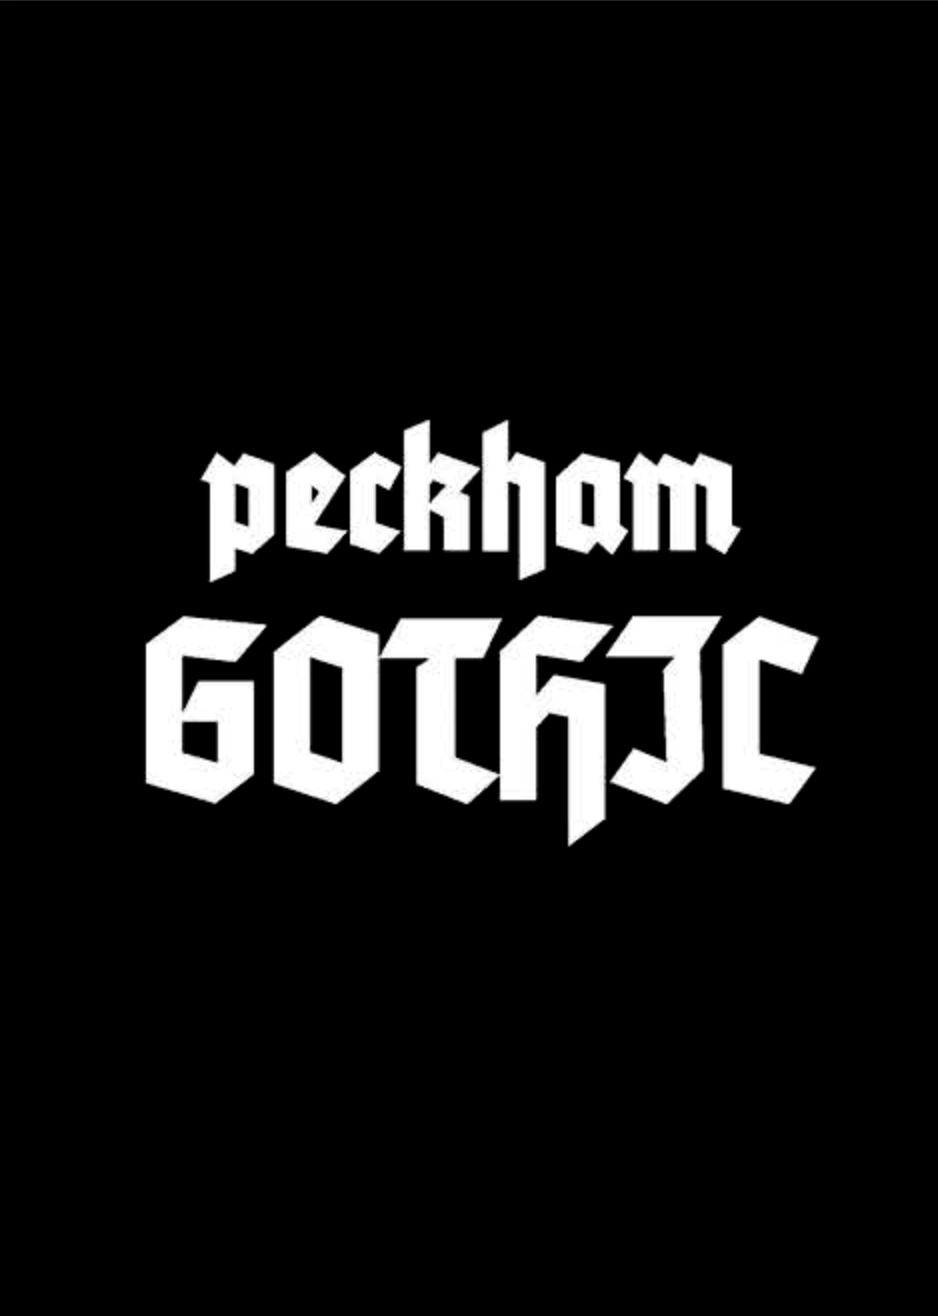 Peckham Gothic  Lewis Bush